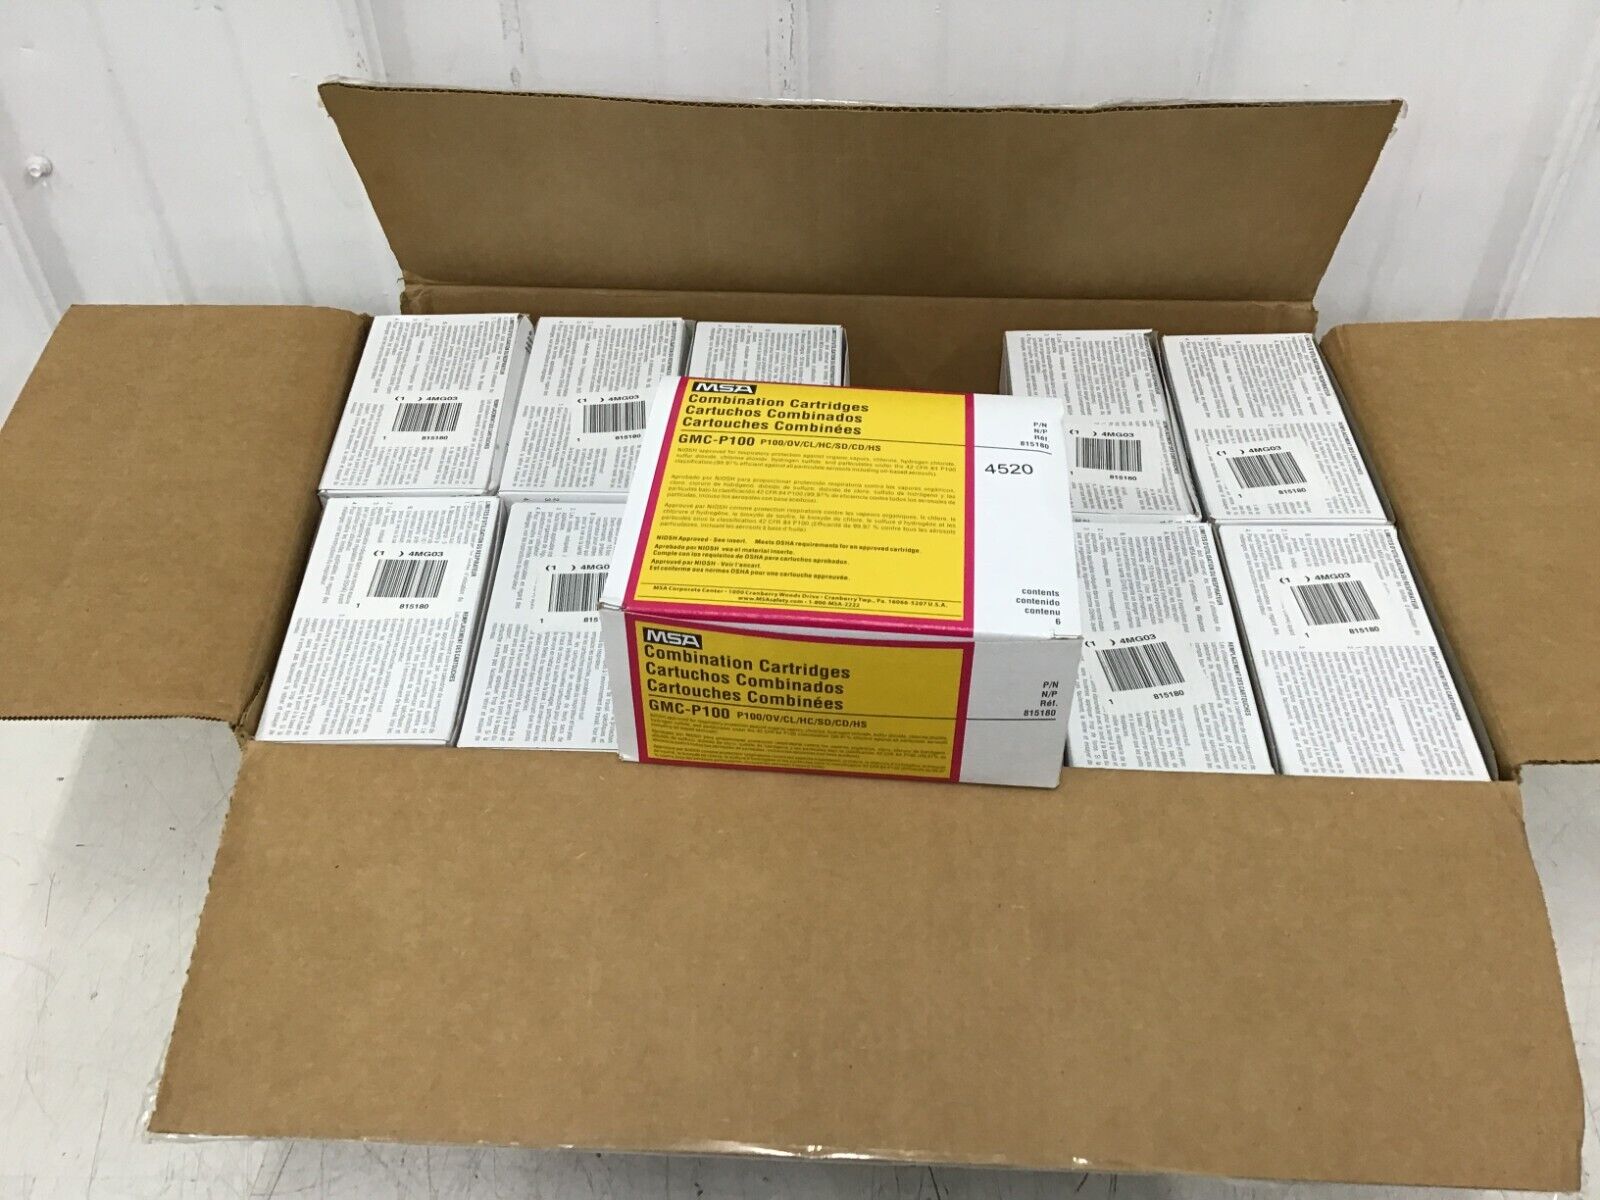 MSA - 815180 Combination Cartridge/Filter 6 PER BOX, 12 BOXES